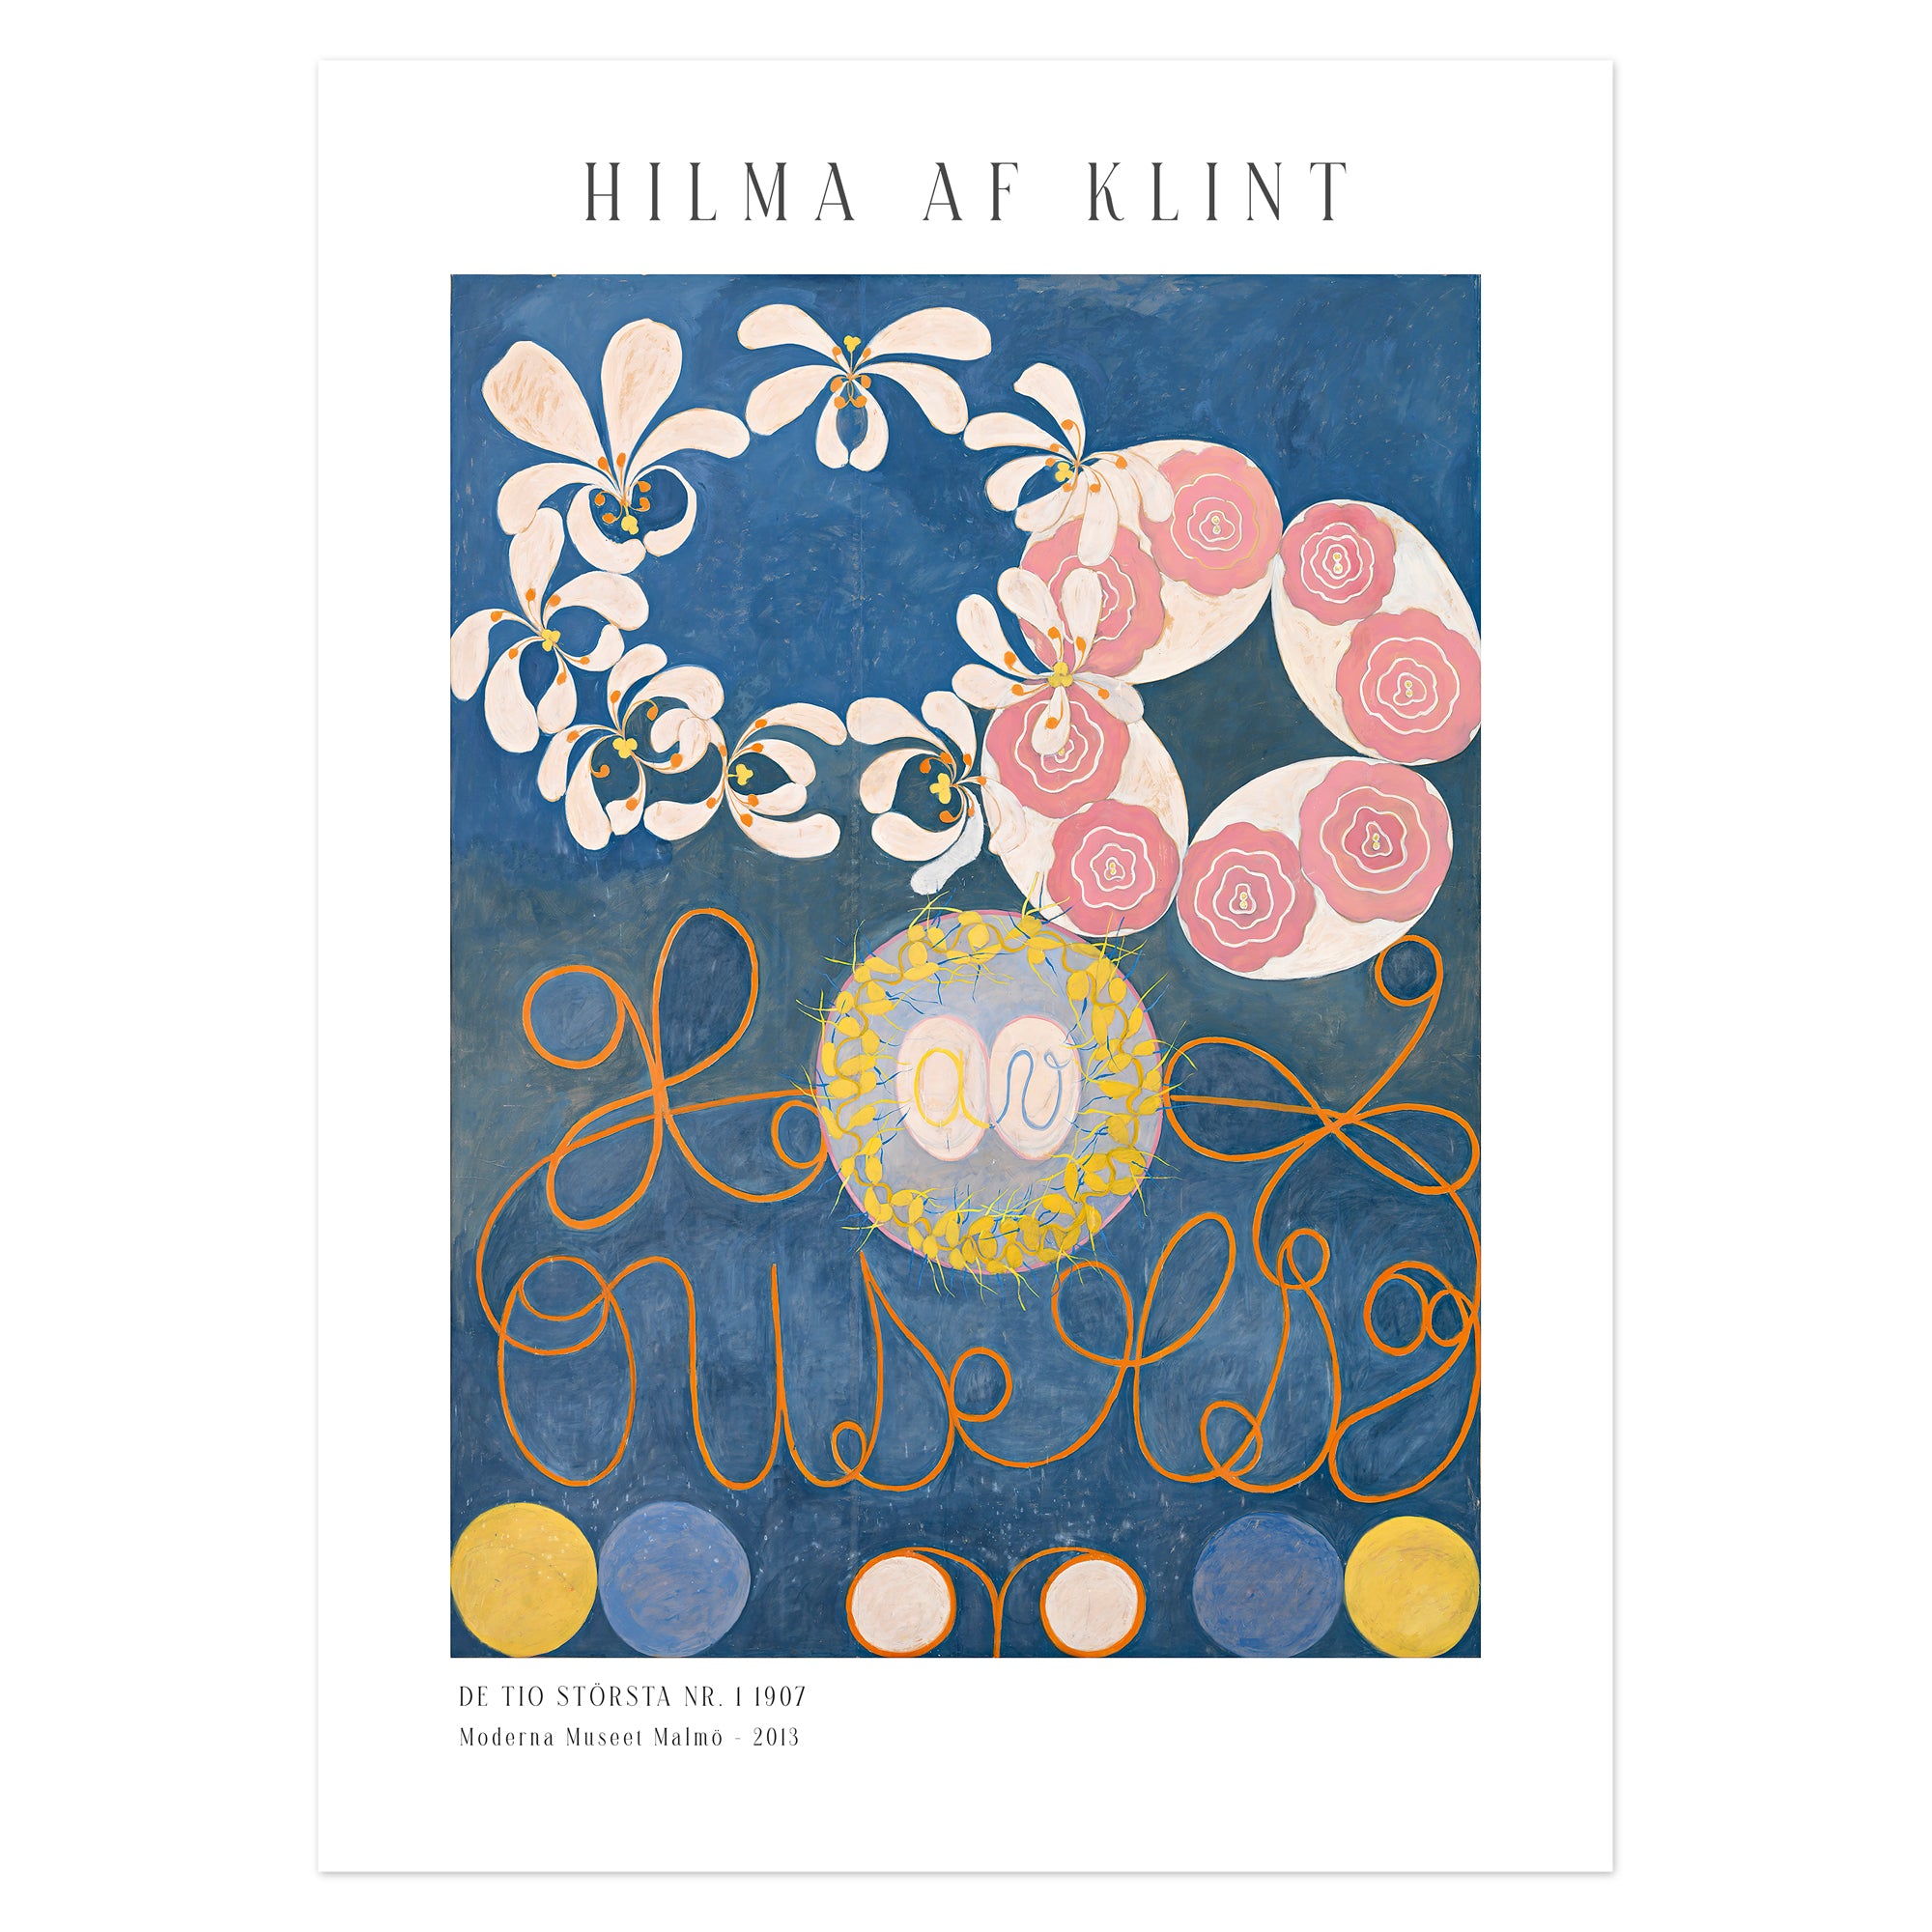 Hilma af Klint Poster - De tio största nr. 1